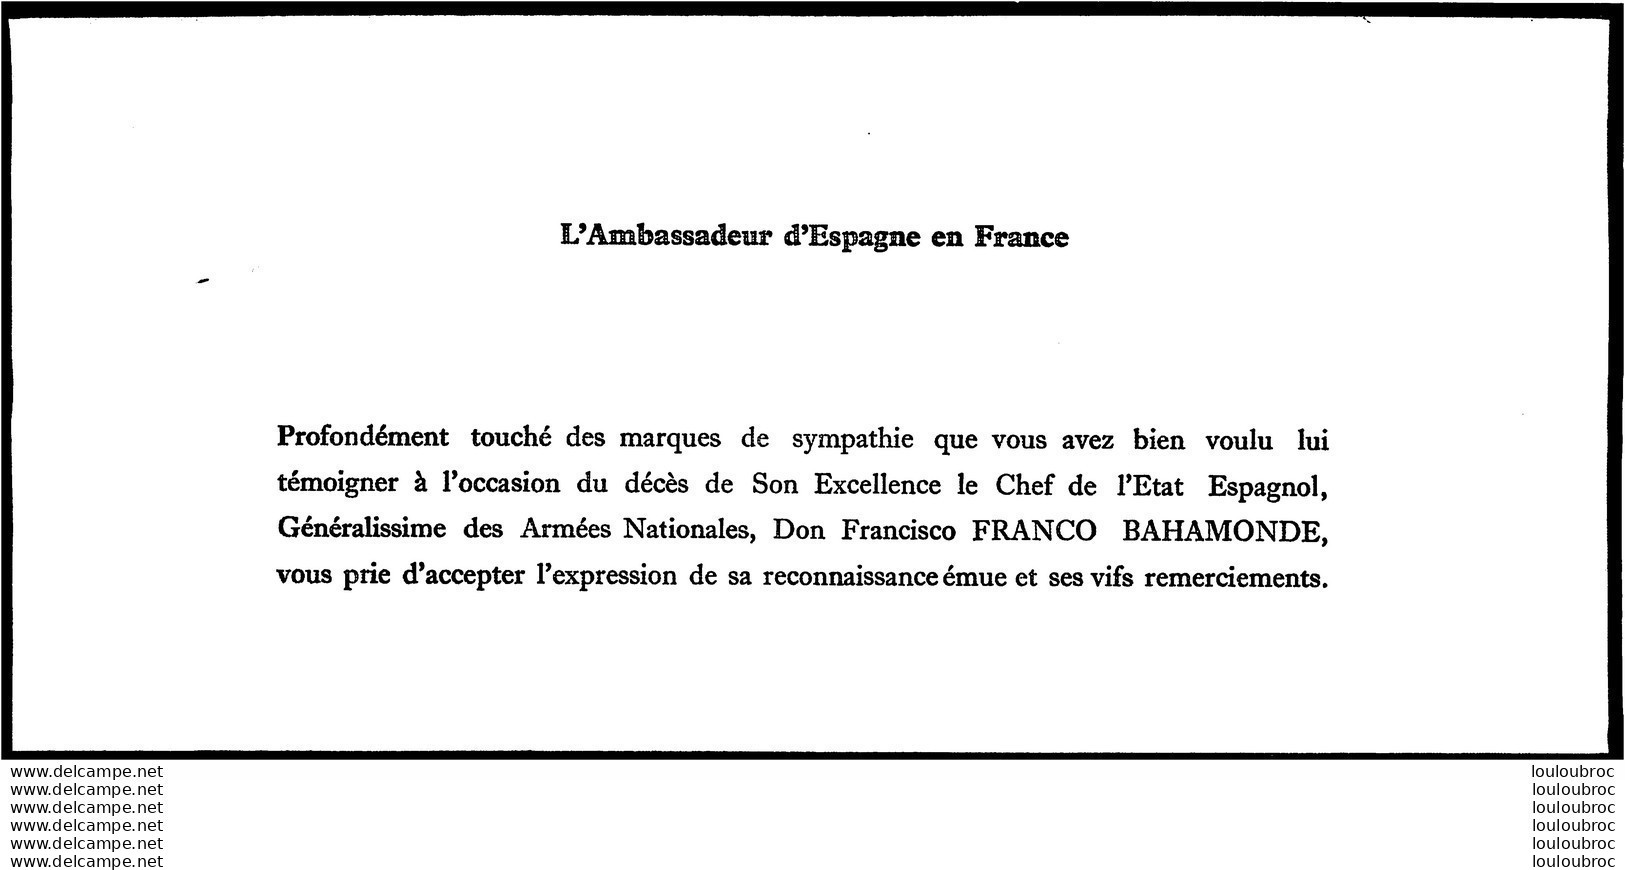 AMBASSADE D'ESPAGNE DECES DE FRANCO BAHAMONDE CARTE DE REMERCIEMENTS AUX CONDOLEANCES - Historische Dokumente